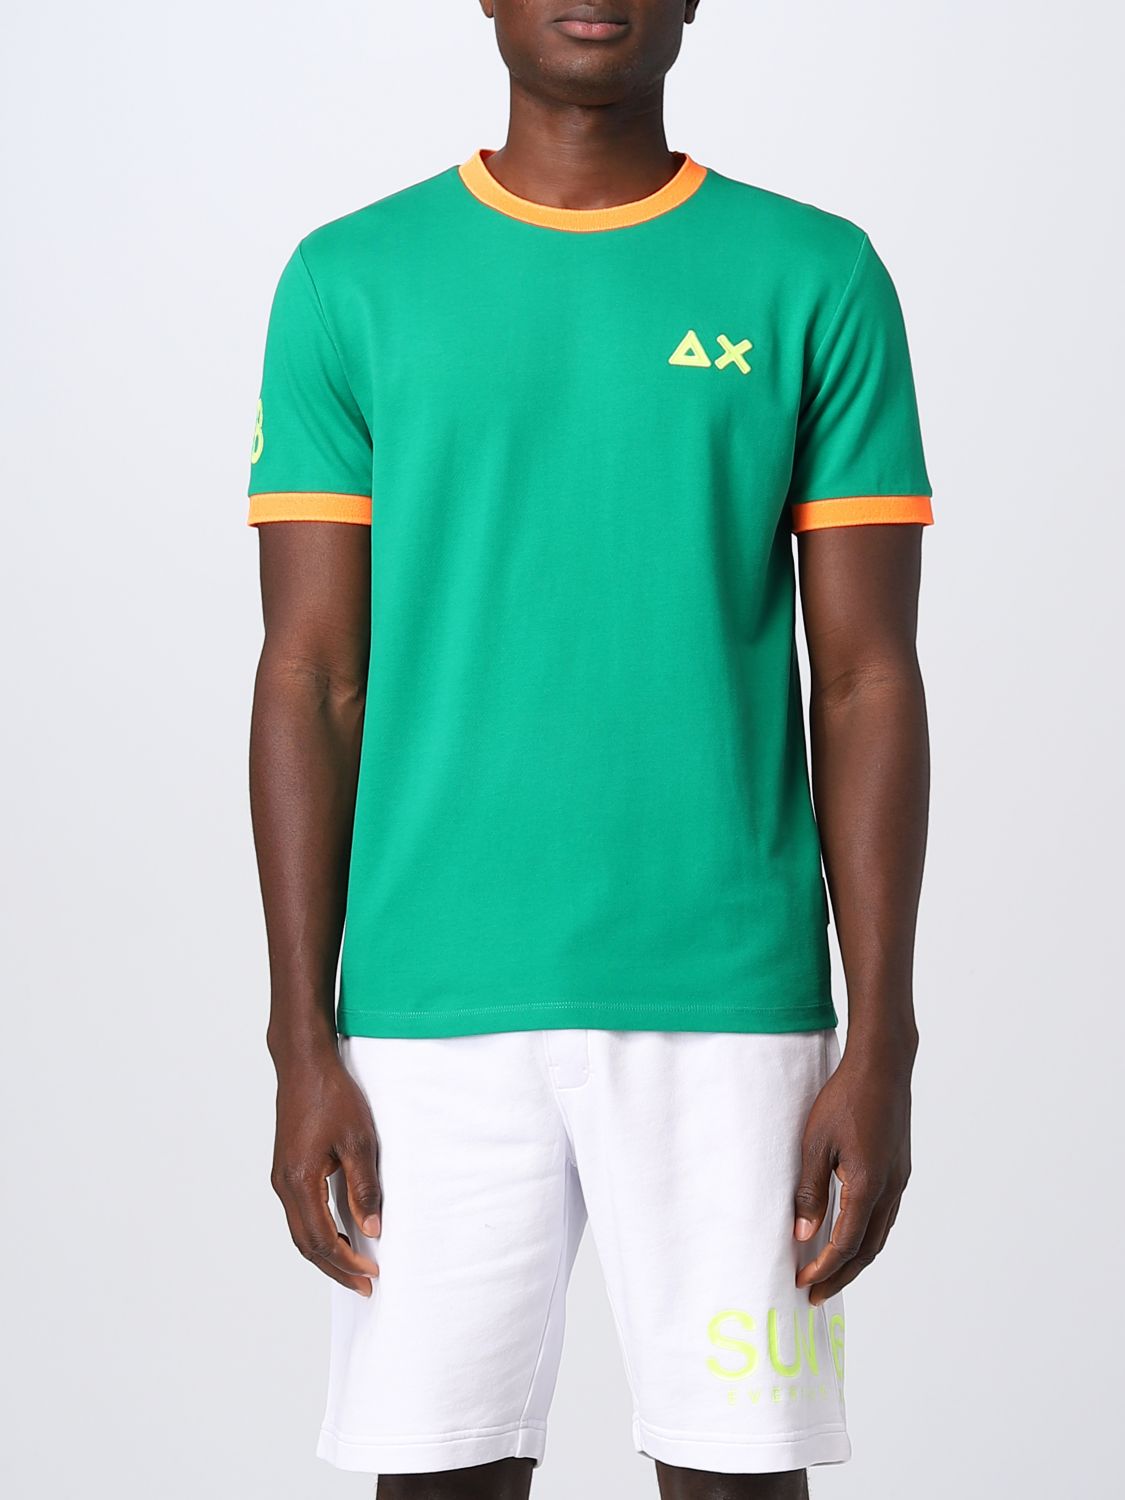 SUN 68: t-shirt for man - Grass Green | Sun 68 t-shirt T33122 online on ...